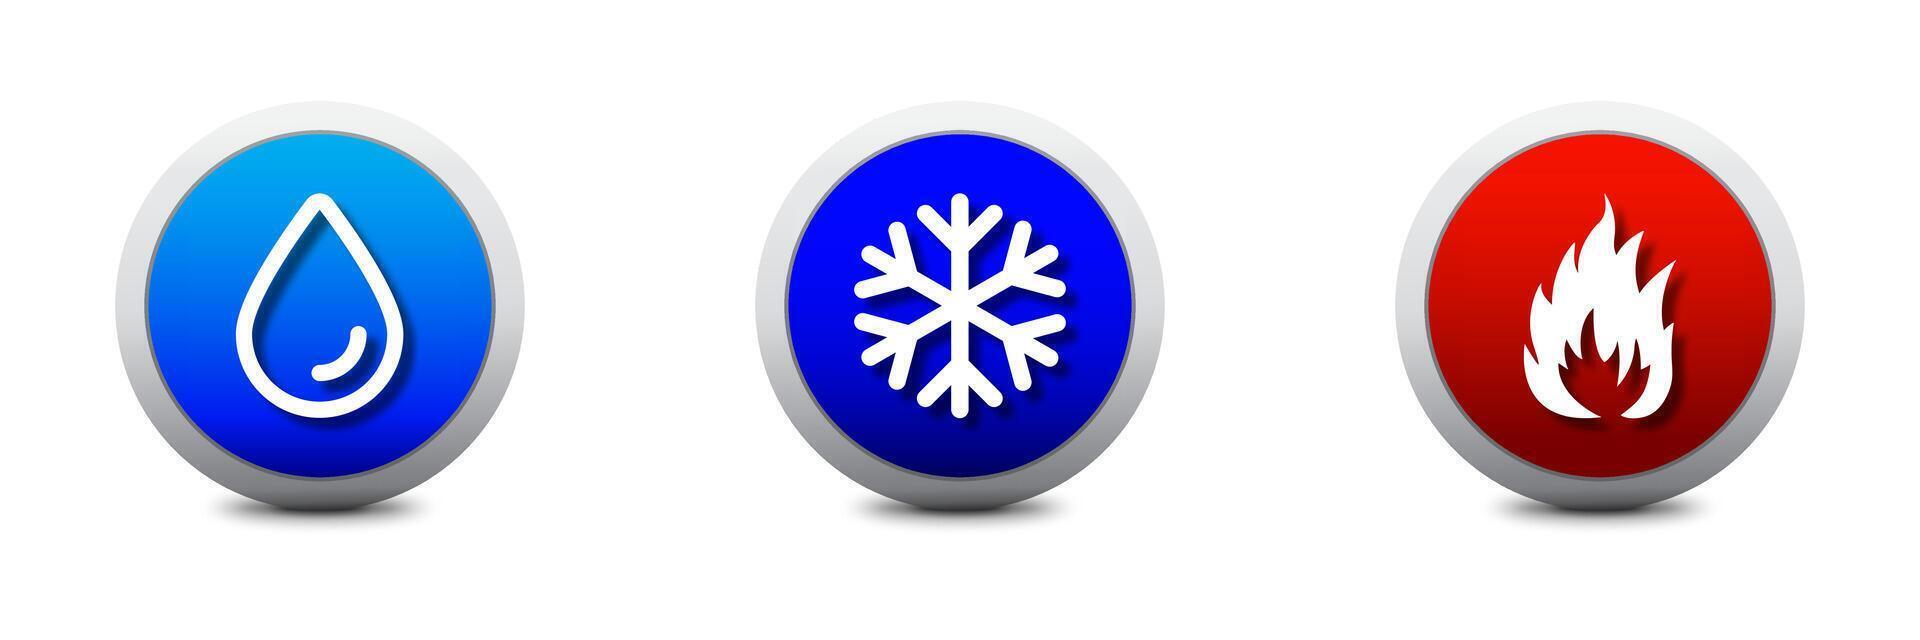 water, vuur, en sneeuwvlok pictogrammen. heet en verkoudheid symbolen. warmte en koud. bevriezing sneeuw en brand icoon vlak vector illustratie.